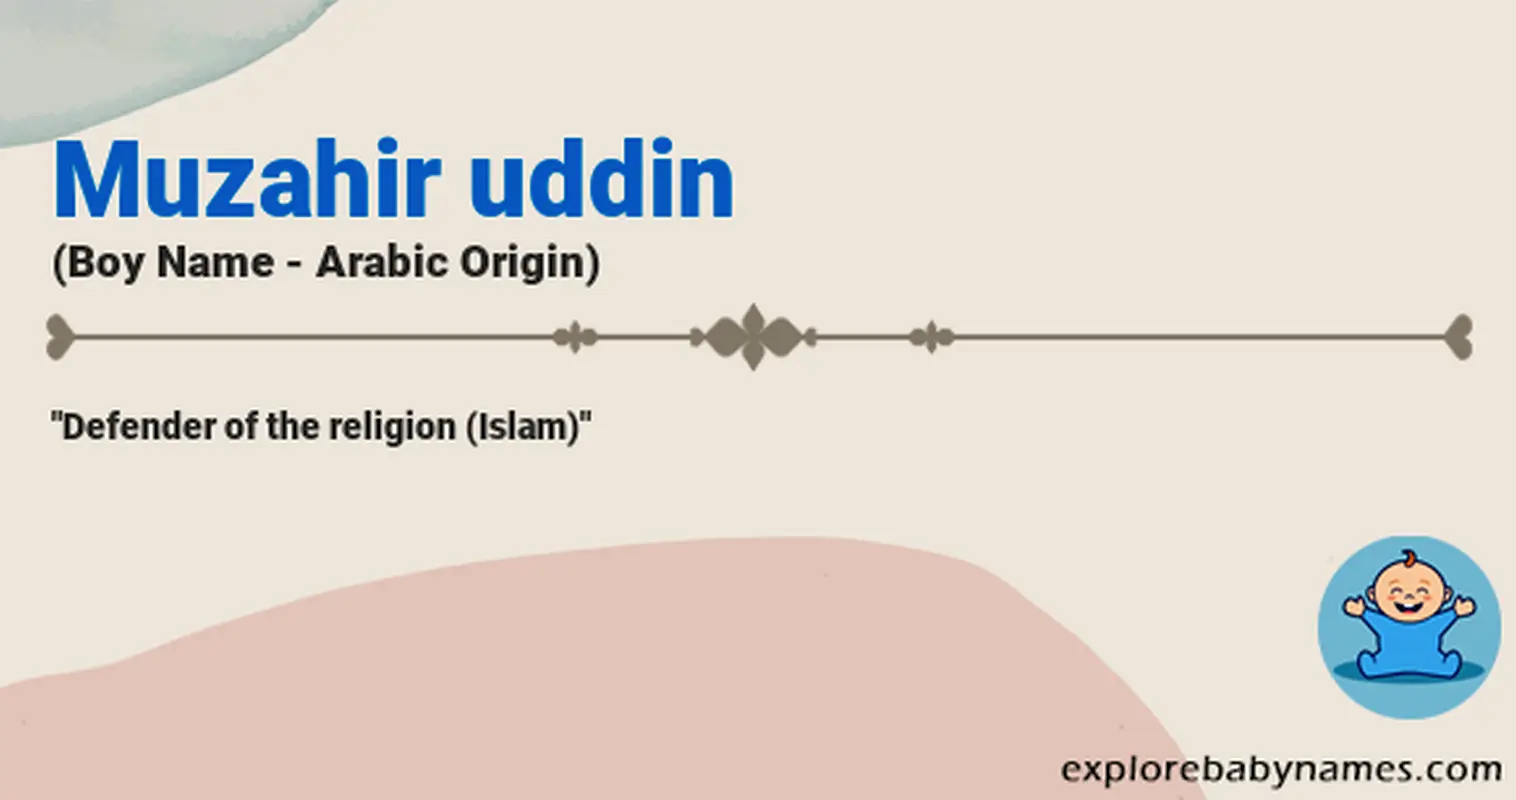 Meaning of Muzahir uddin